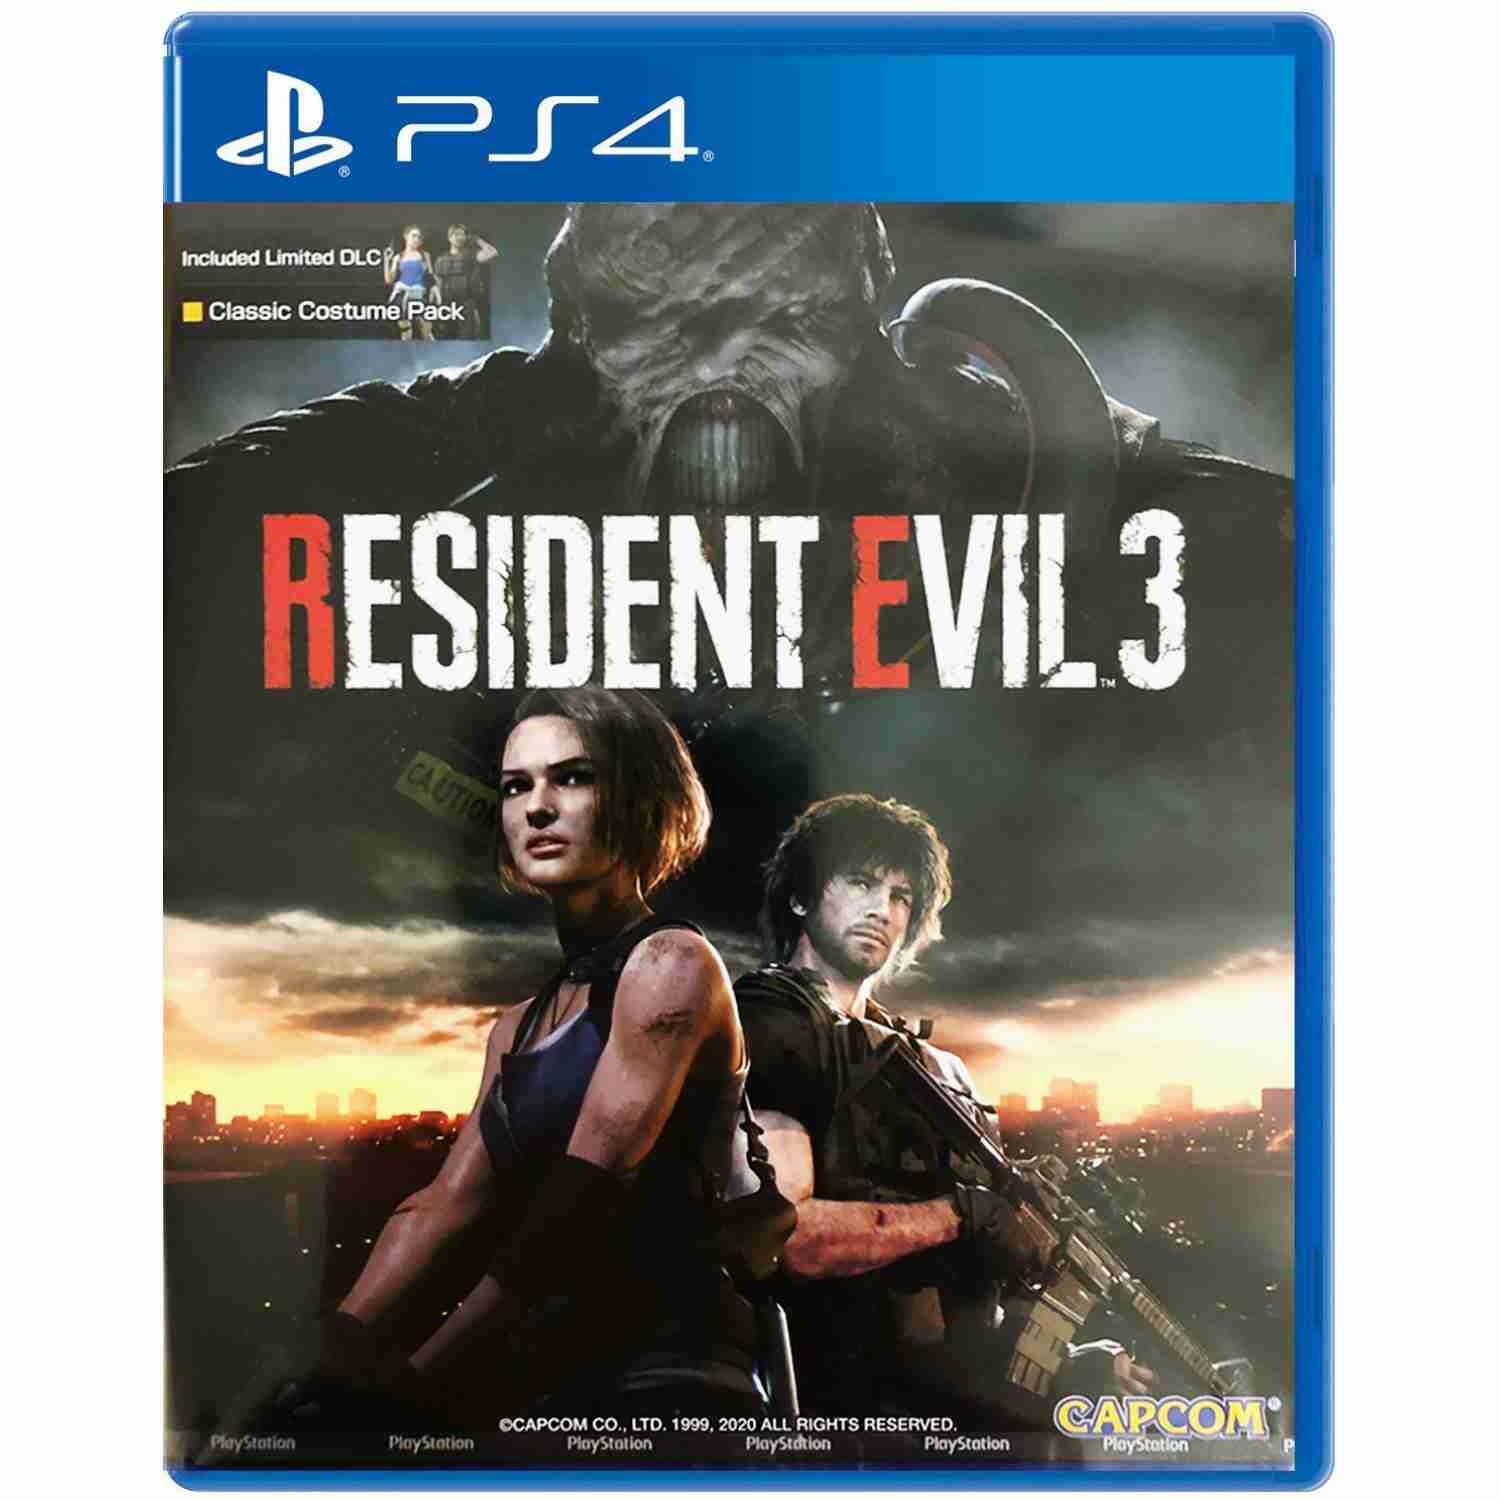 Resident evil 3 ps5. Resident Evil 4 ps3 диск. Resident Evil 2 пс4 диск. Resident Evil 4 на ПС 4 диск. Resident Evil 3 (ps4).